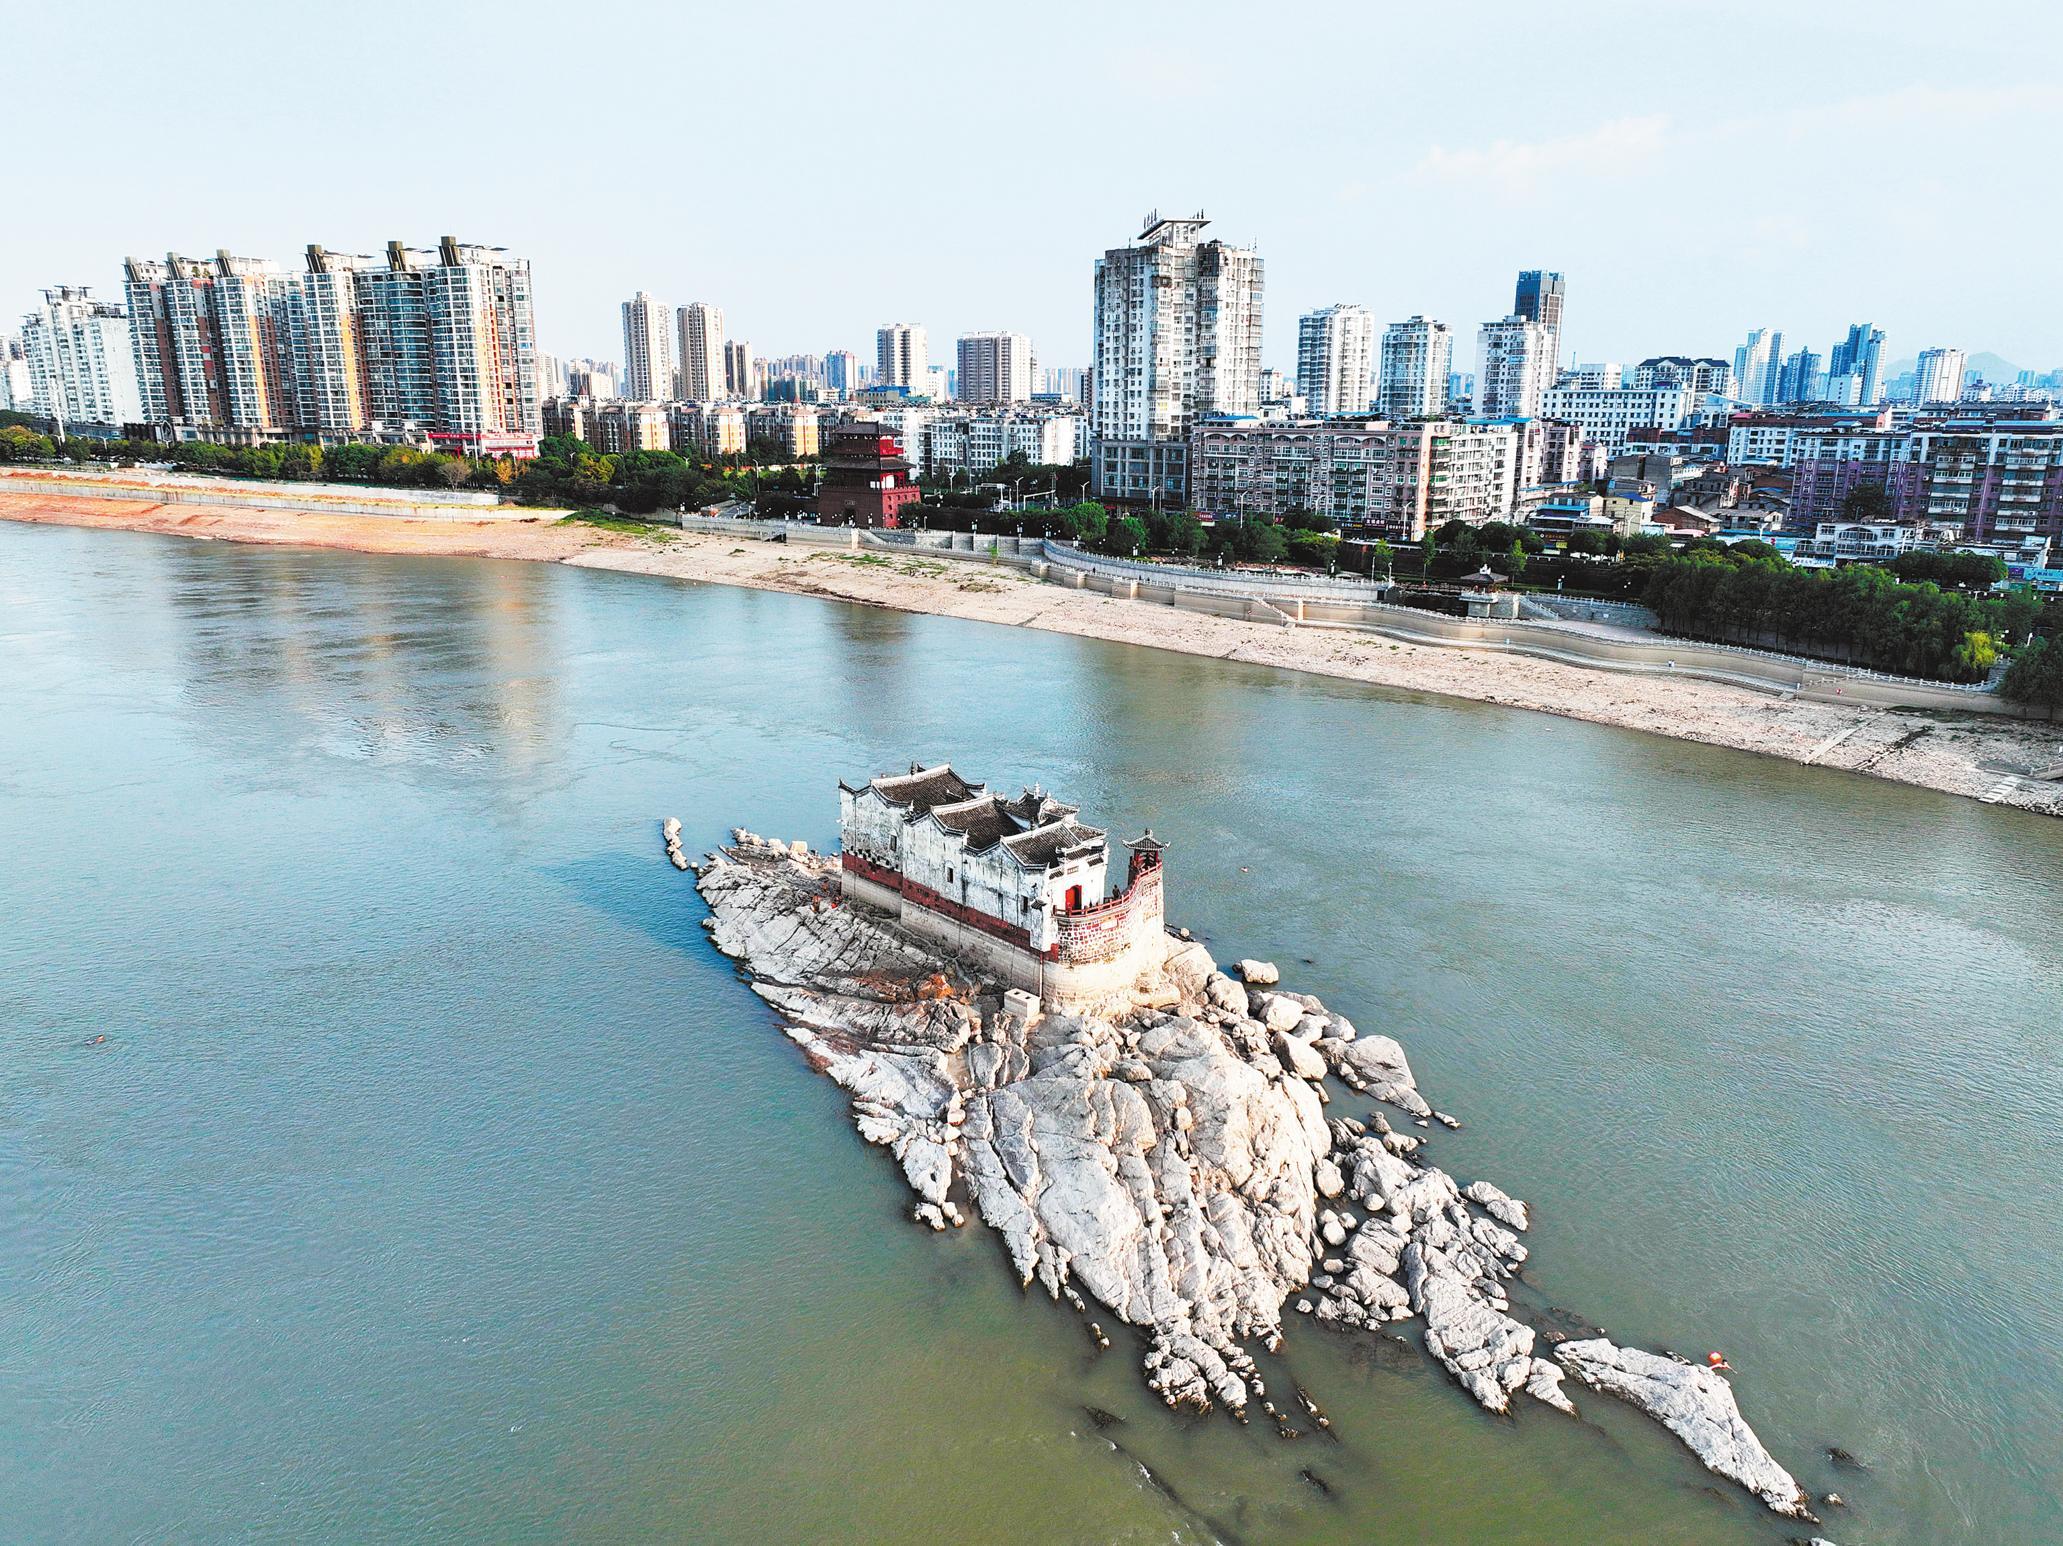 长江鄂州段水位跌至有纪录低位 700年历史“长江第一阁”露真容 